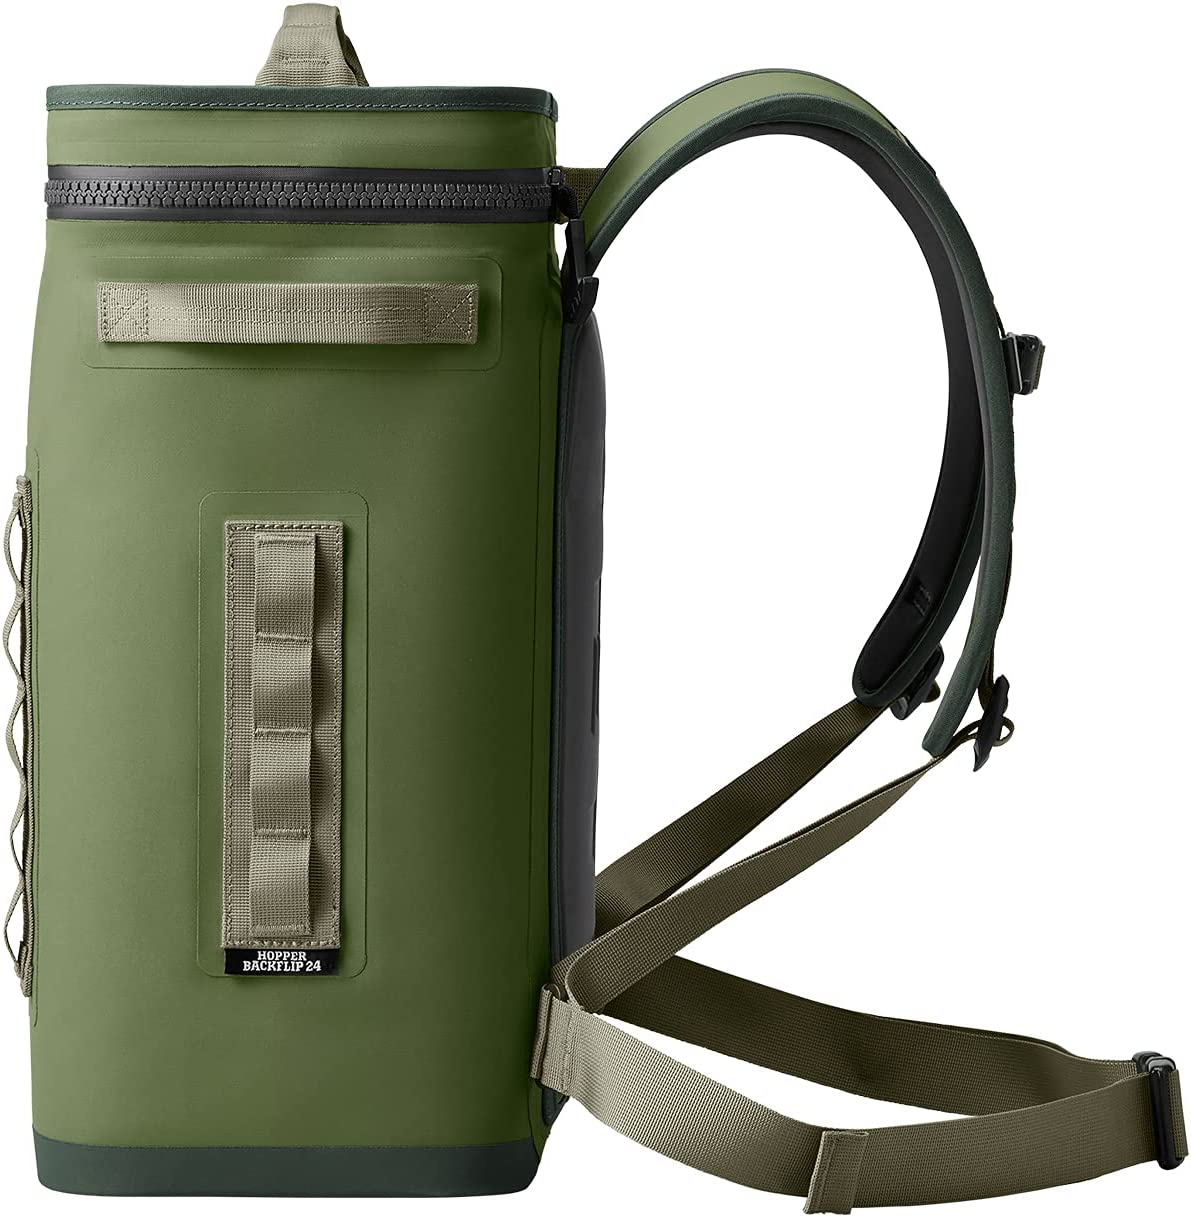 YETI Hopper M20 Soft Backpack Cooler Navy